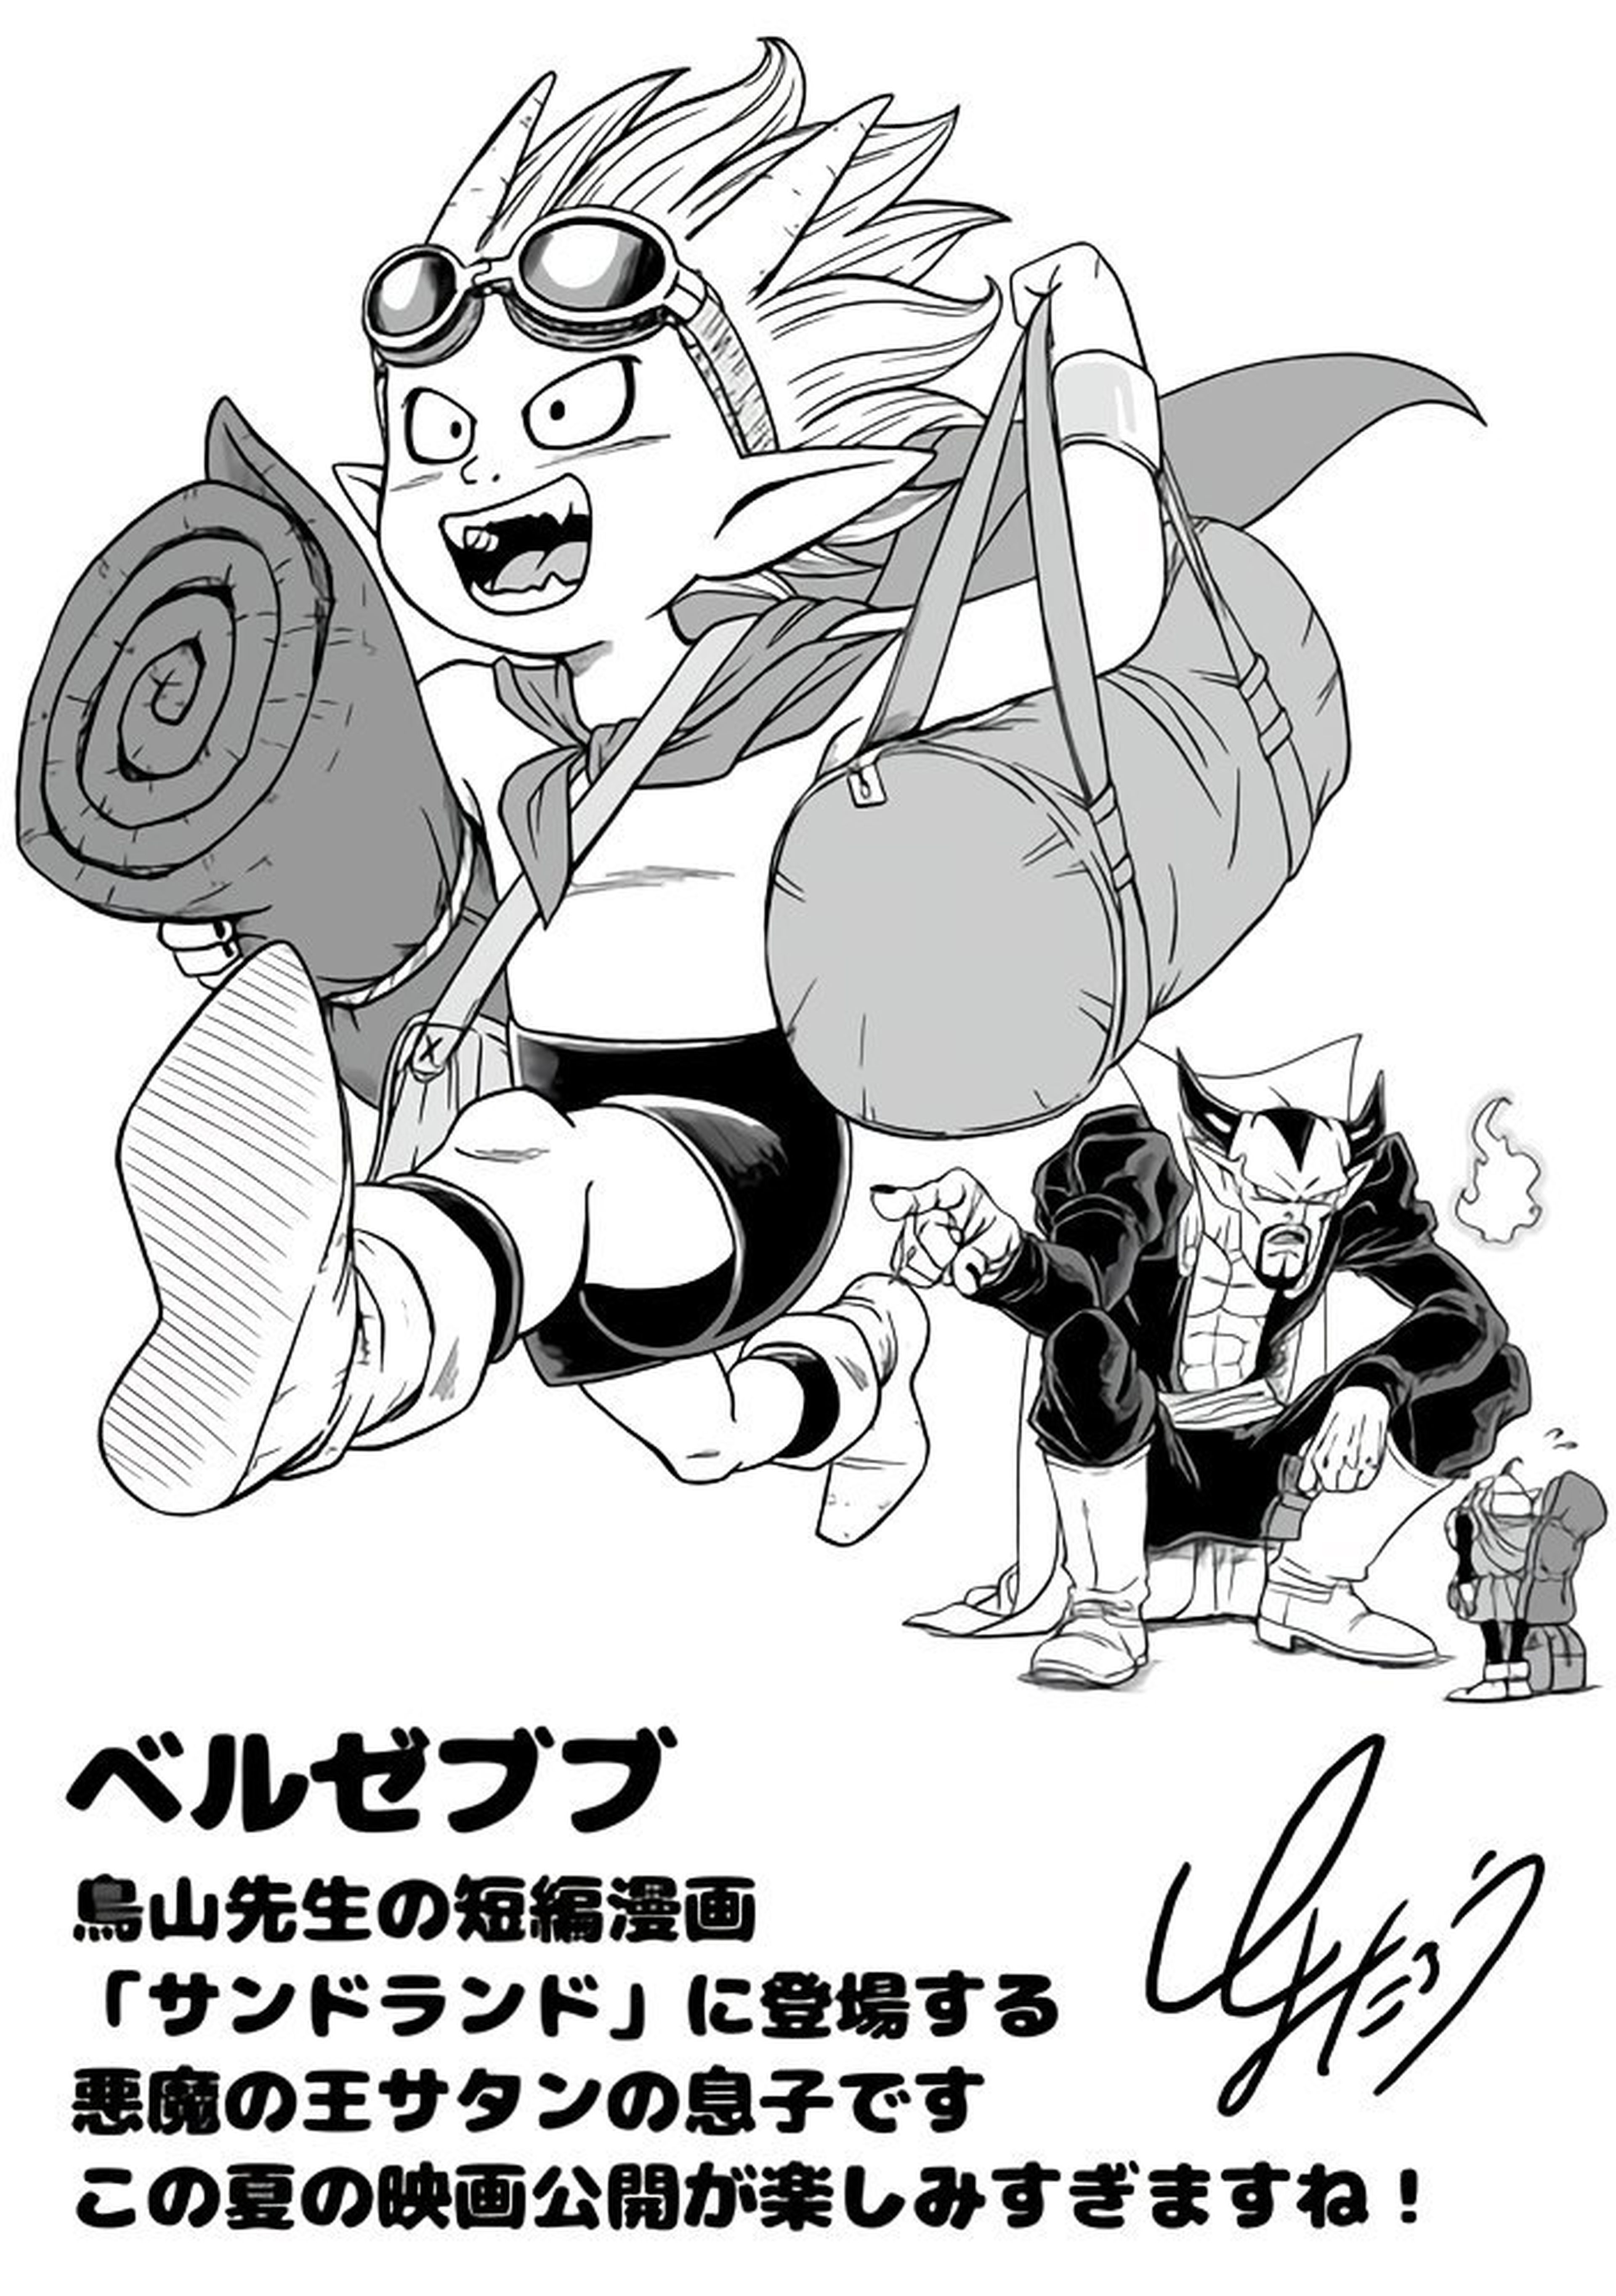 Dragon Ball - Toyotaro hace una excepción en su dibujo mensual y apuesta por otra serie de Akira Toriyama